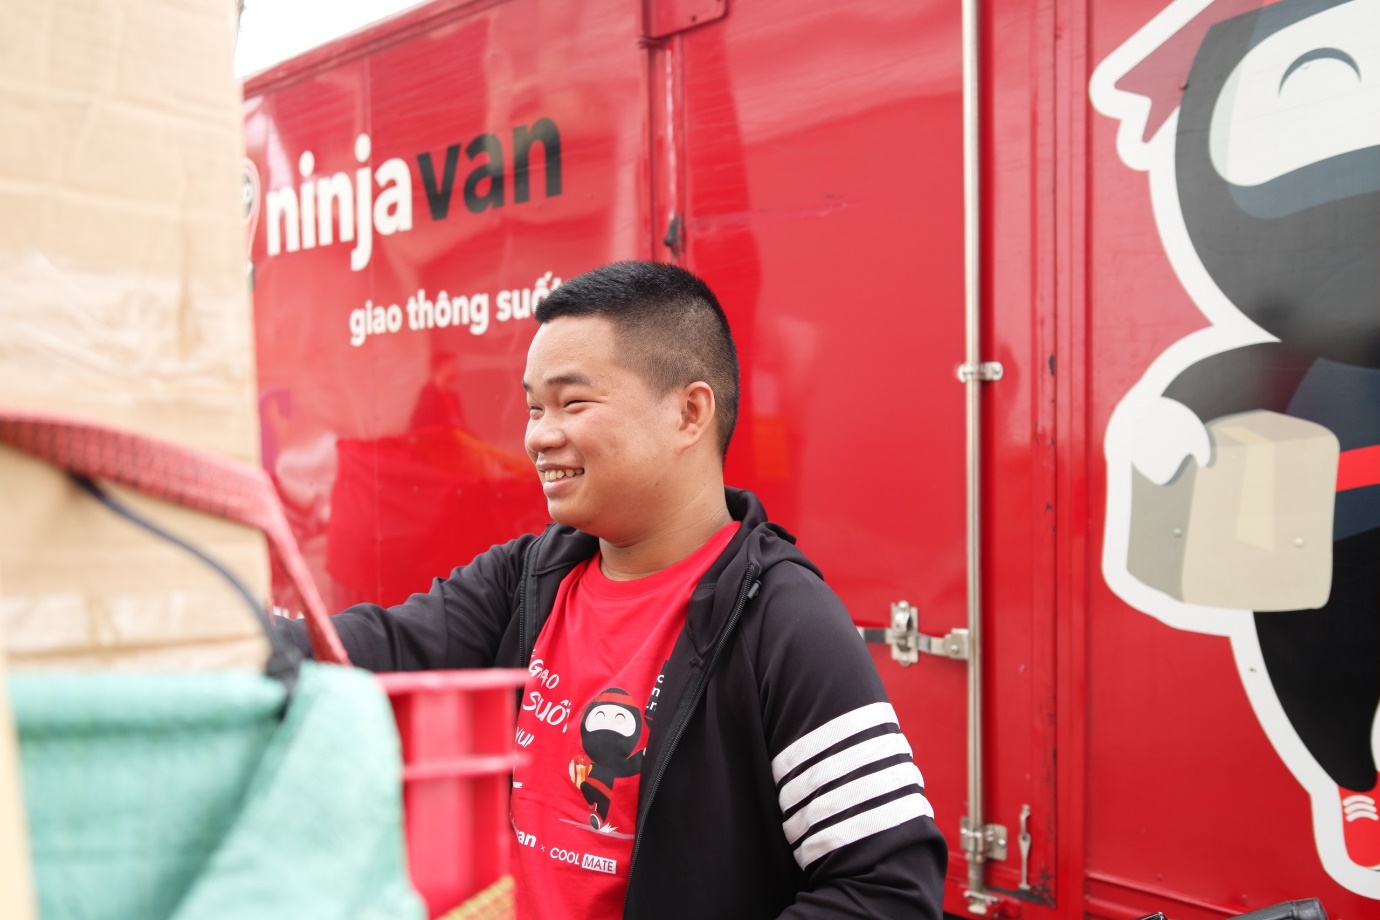 Ninja Van: Dịch vụ giao nhận quốc tế hỗ trợ đối tác xây dựng thương hiệu - Ảnh 2.